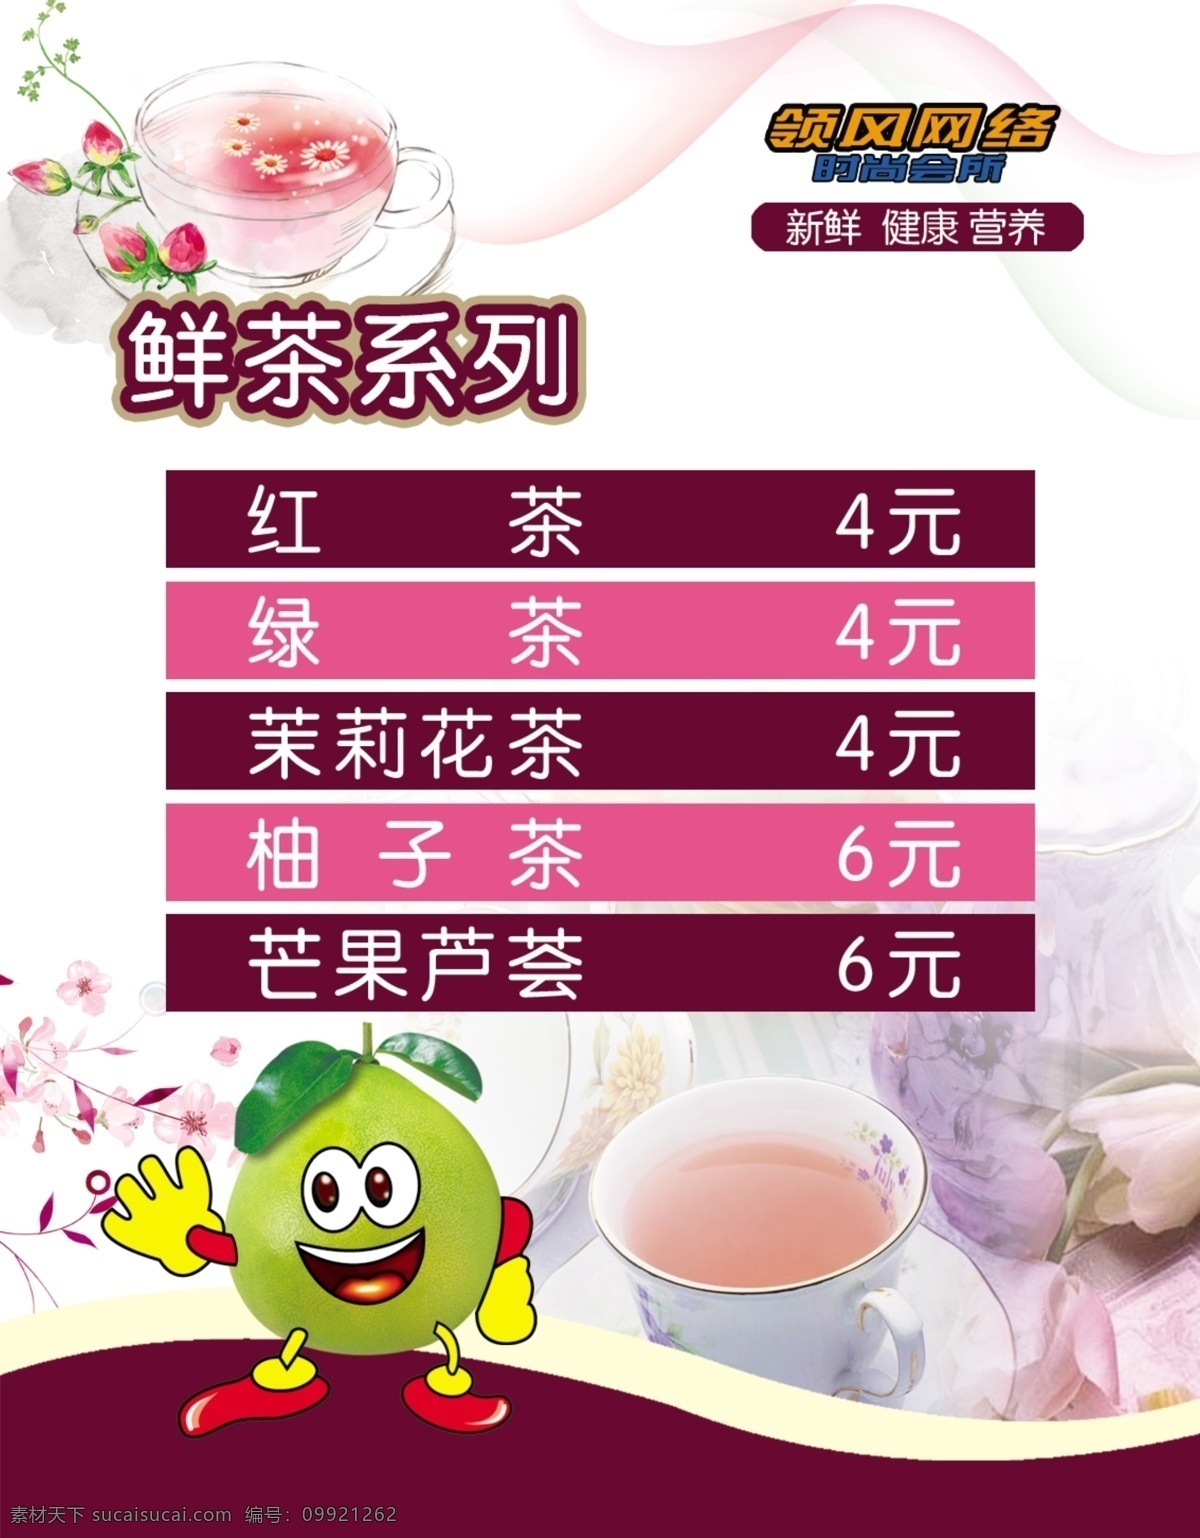 鲜茶系列 鲜茶 花茶 卡通柚子 灯片 价目表 分层